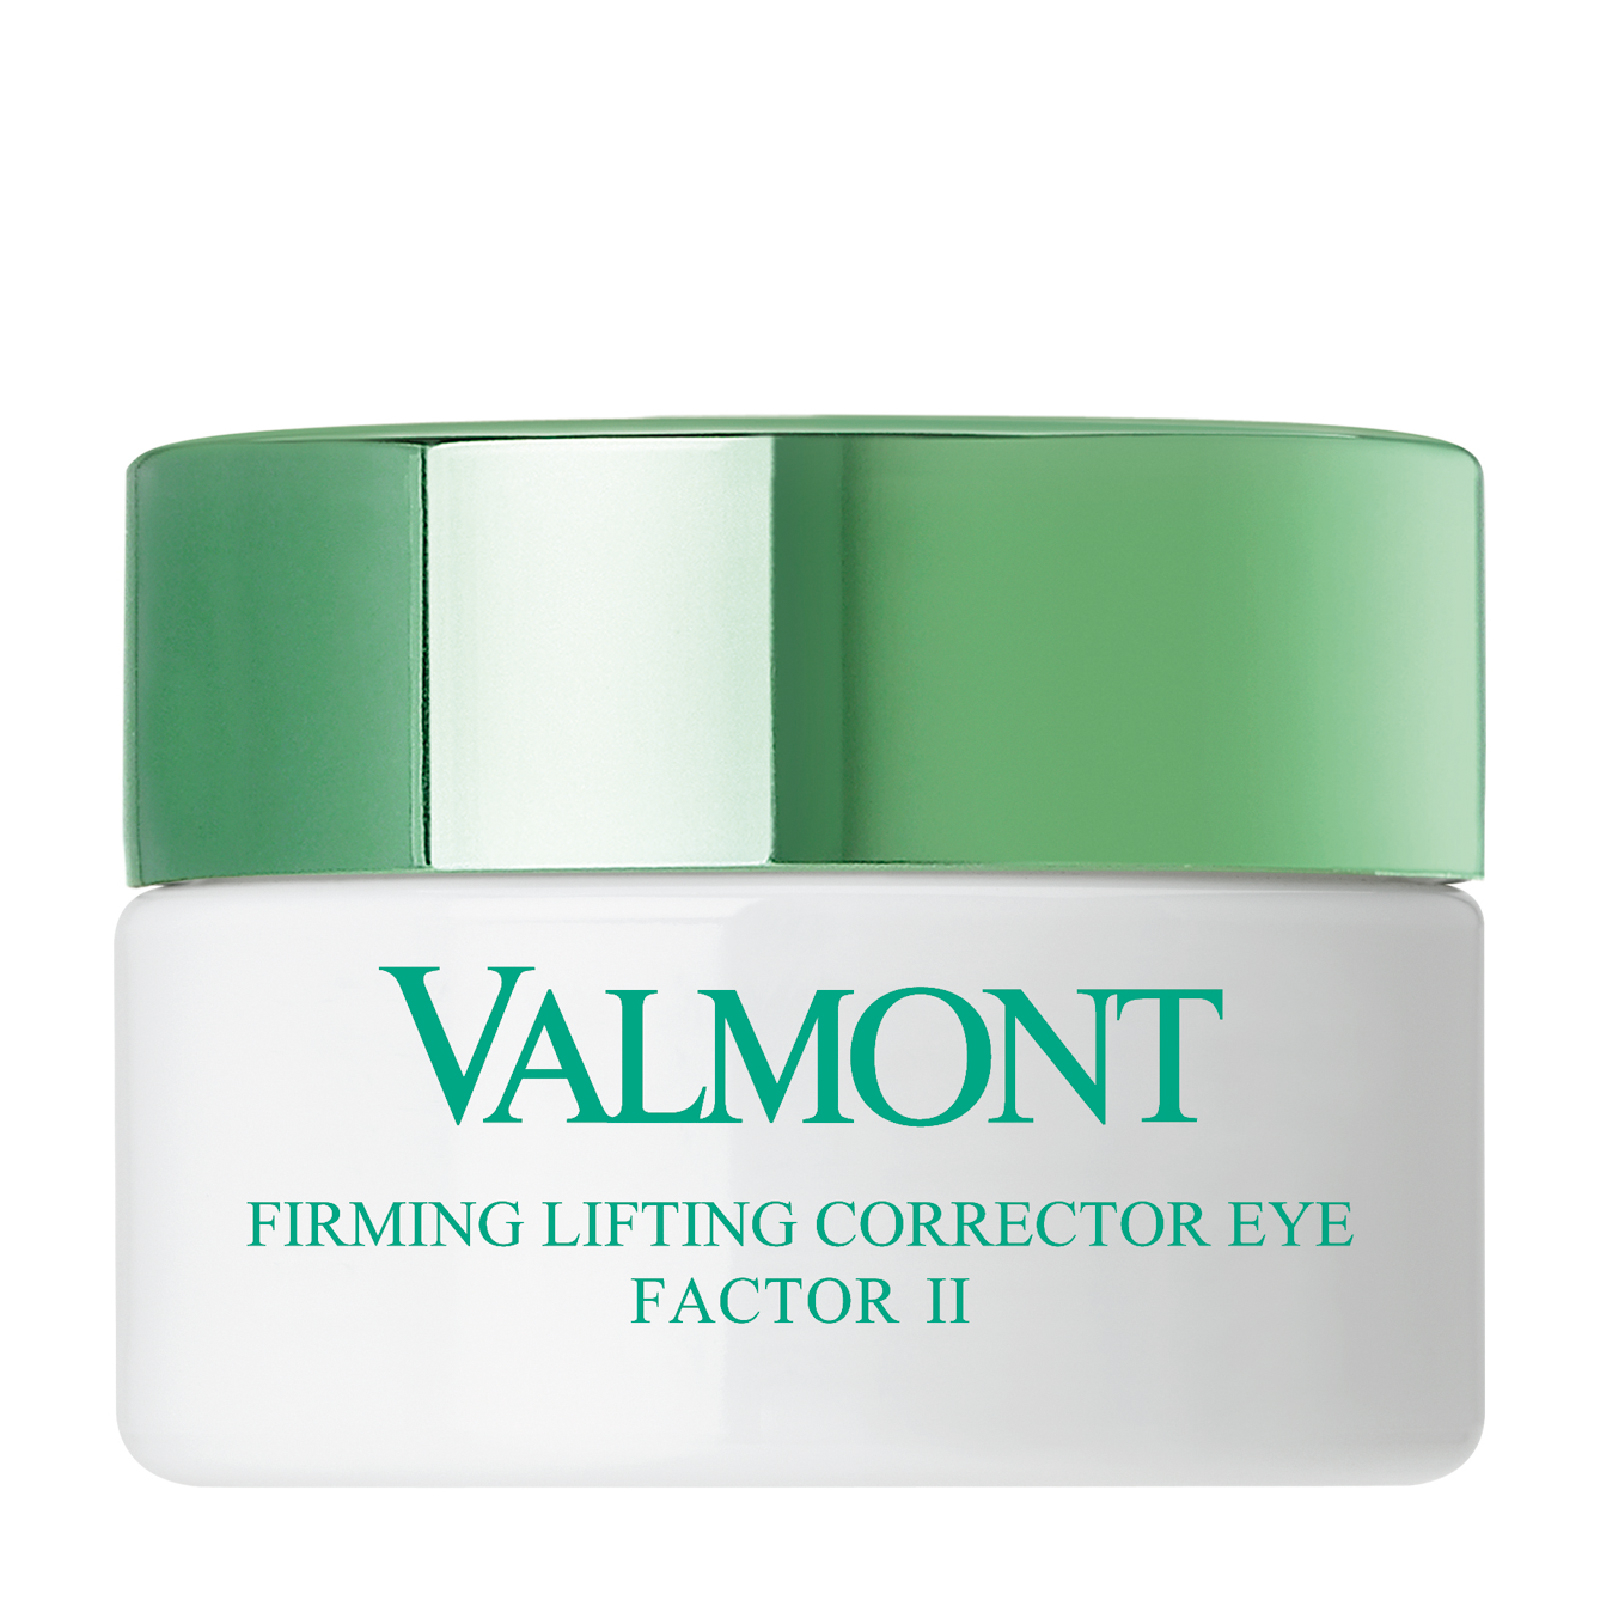 Contorno reafirmante Firming Lifting Corrector Eye Factor II de Valmont